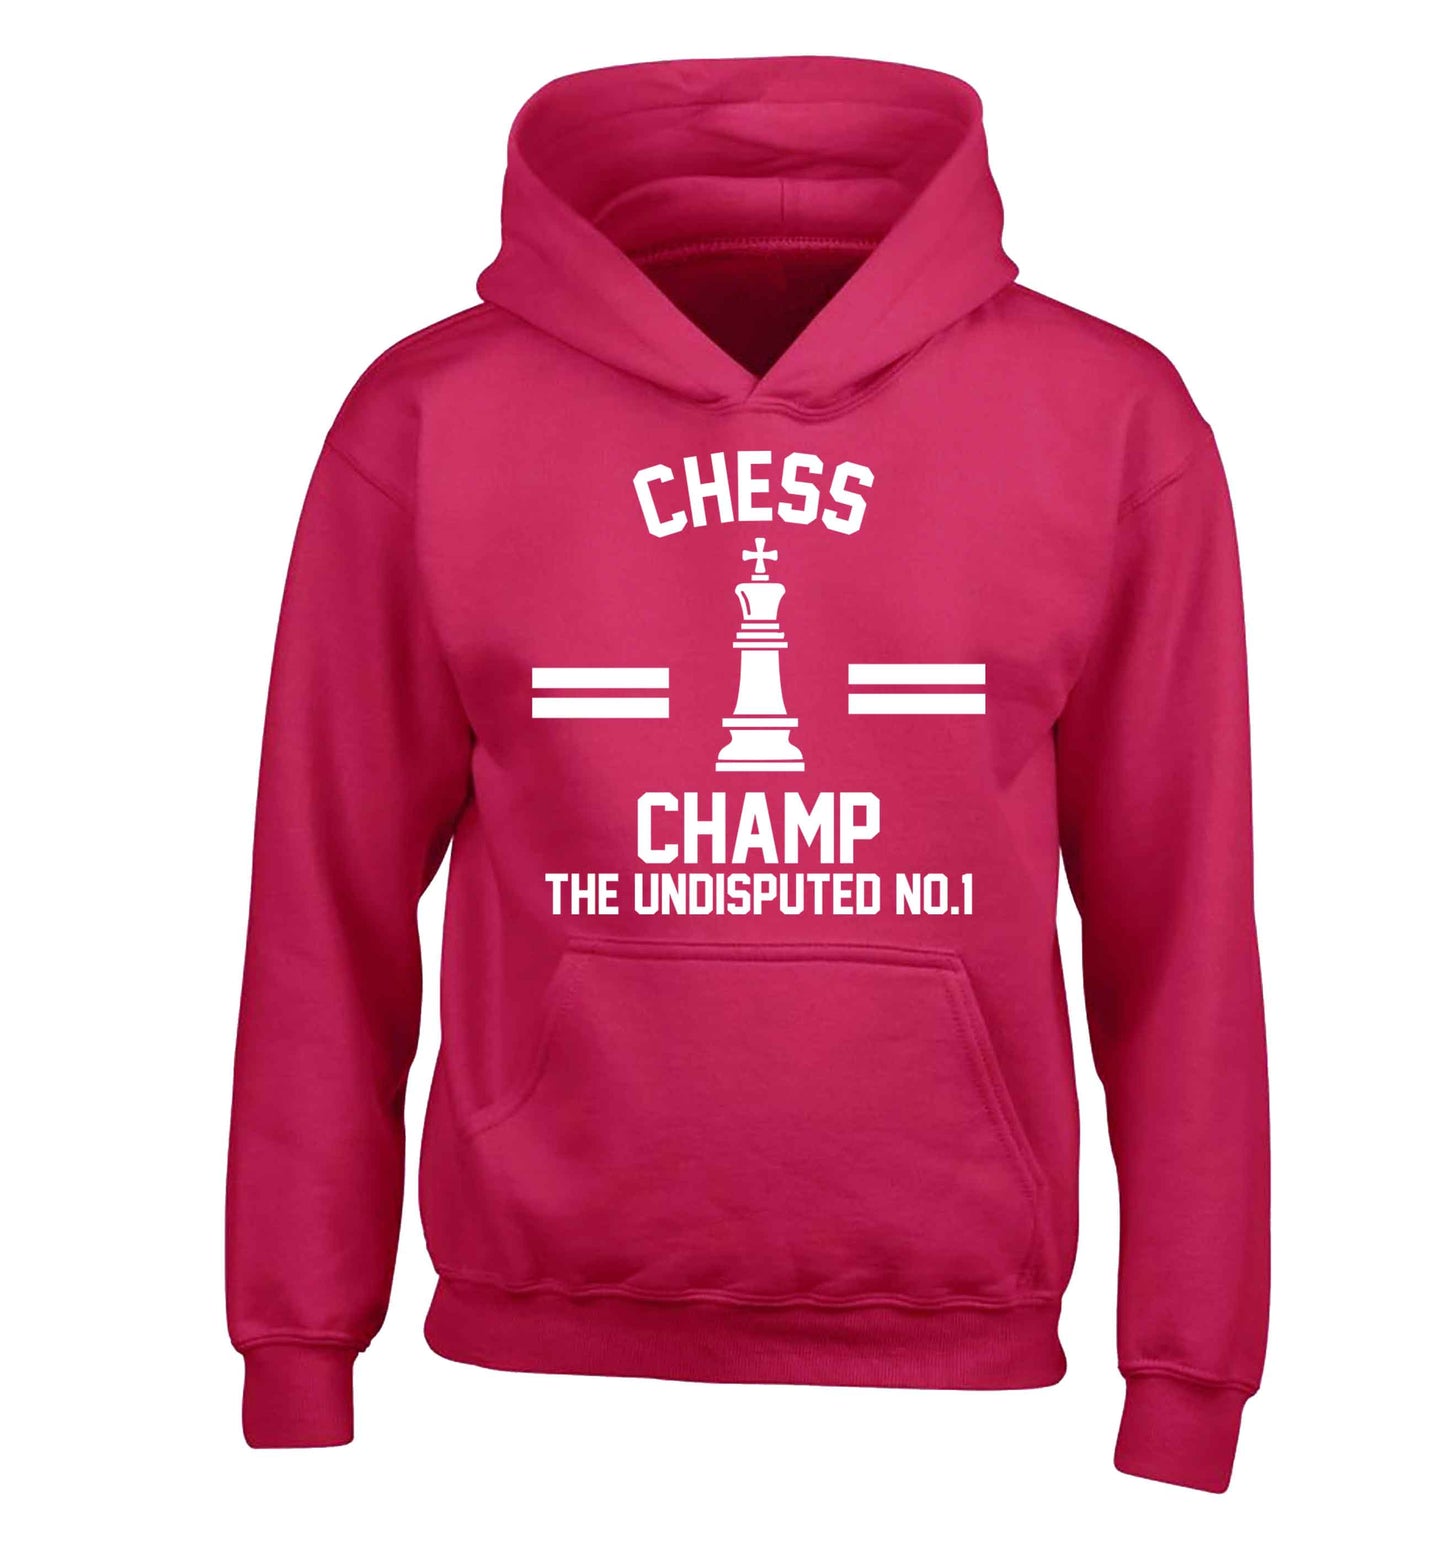 Undisputed chess championship no.1  children's pink hoodie 12-13 Years